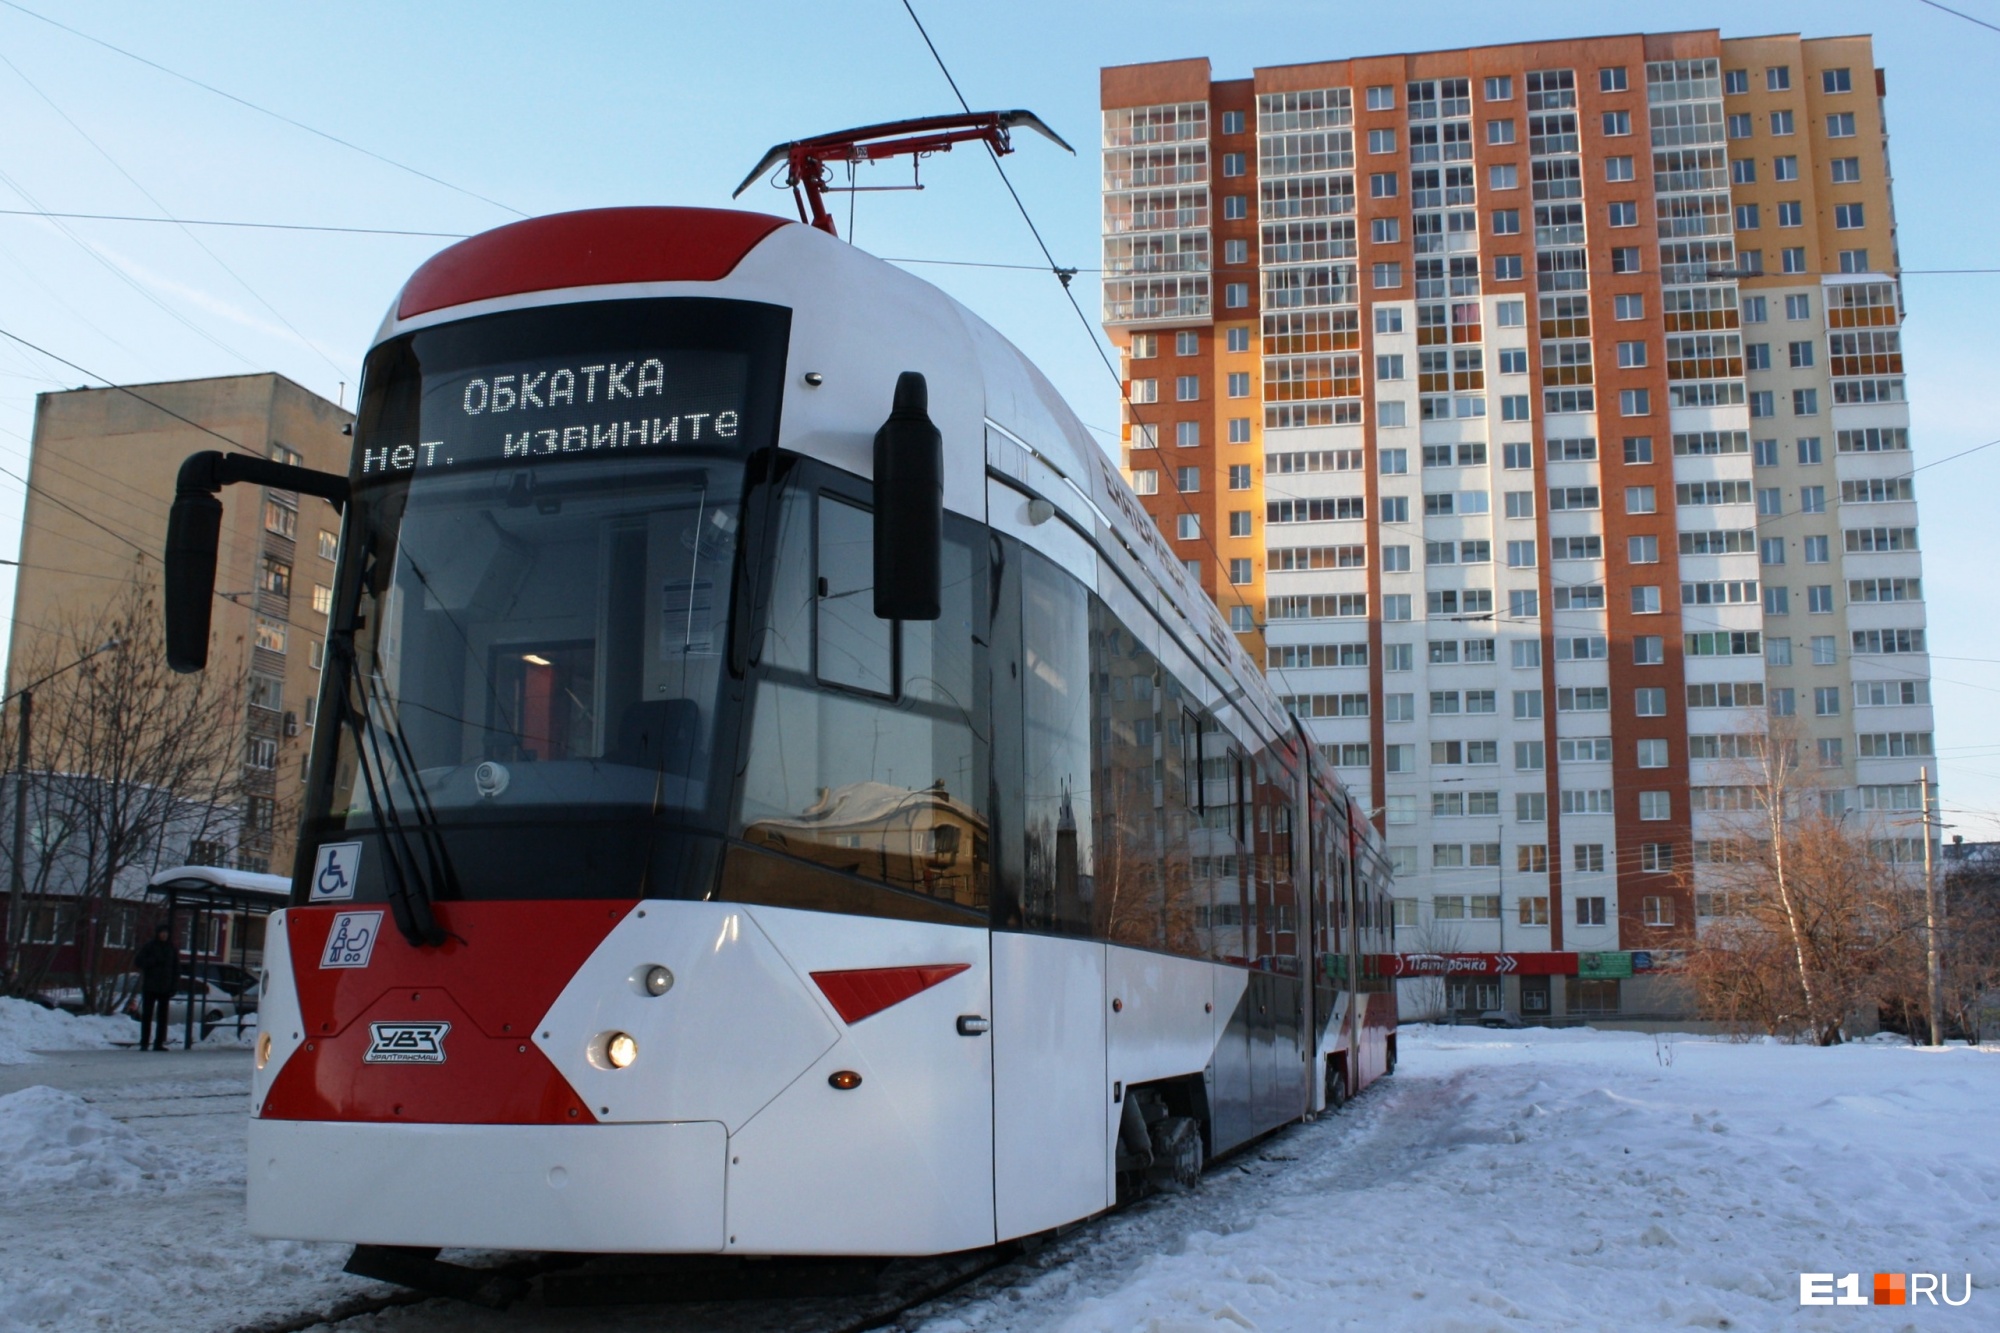 Стало известно, где будет ходить самый длинный трамвай в истории Екатеринбурга. Мы его протестировали